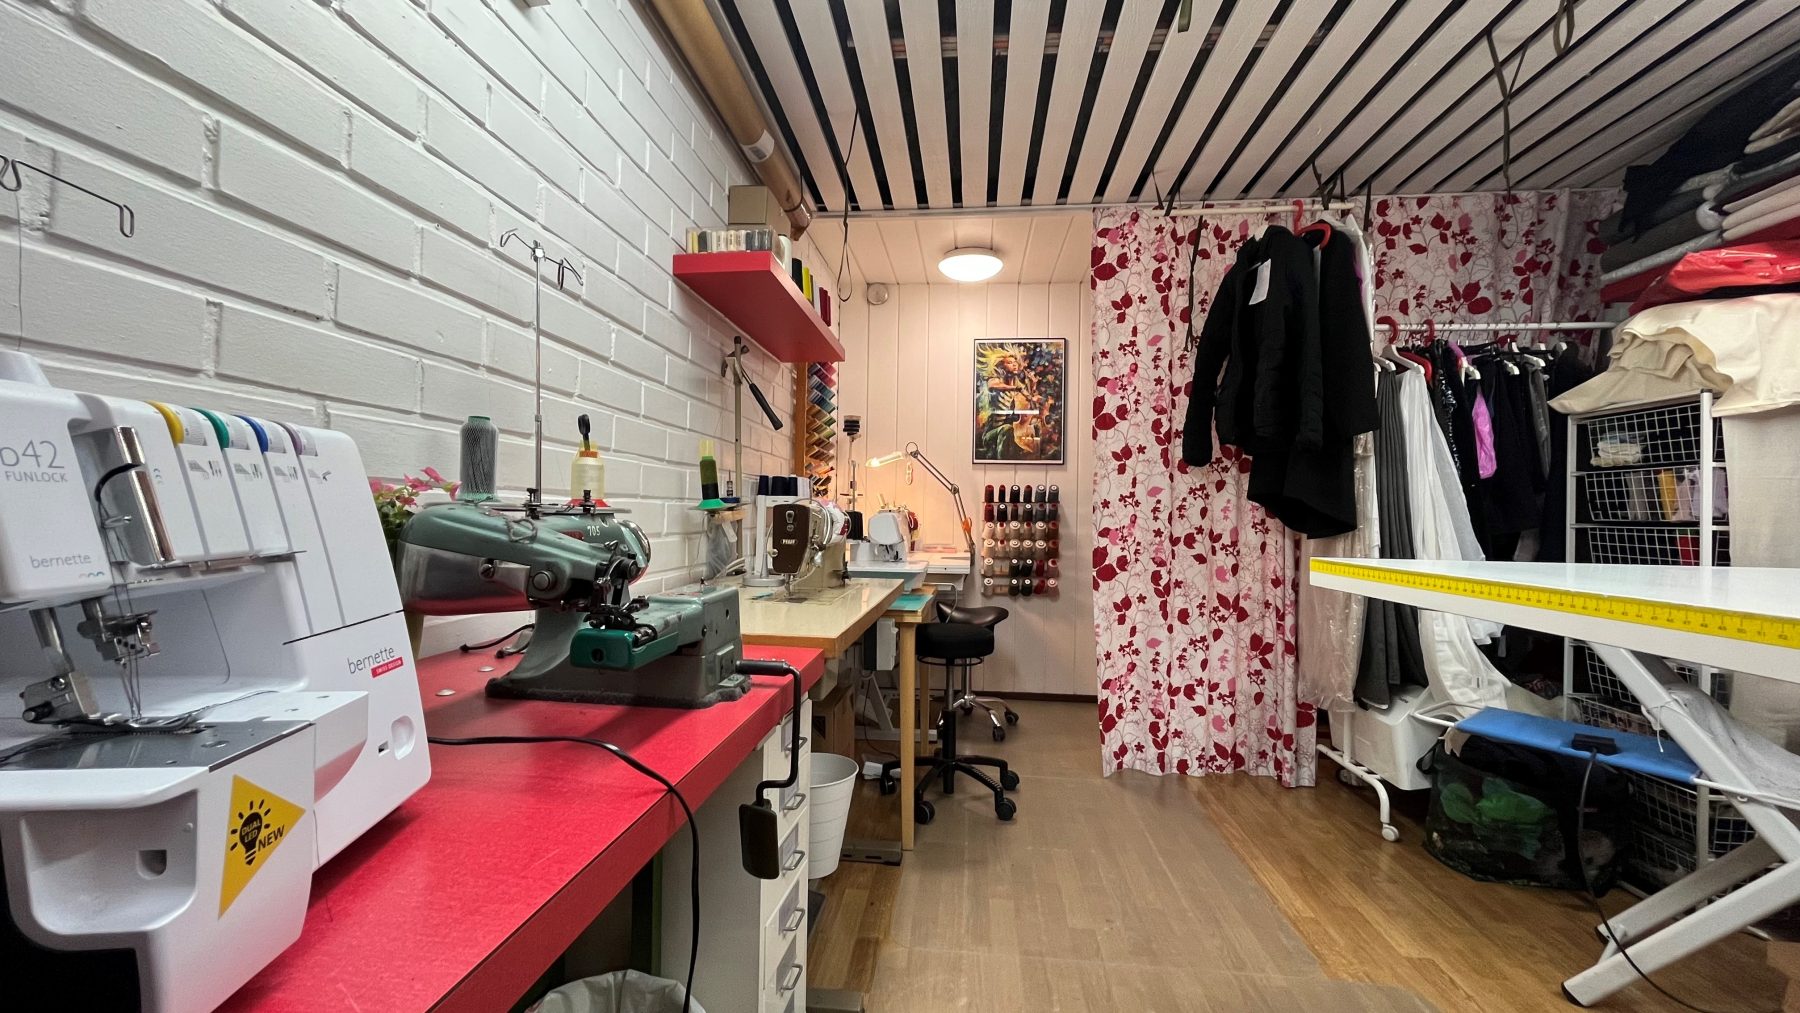 Kuva Sellistin sauman ompelimosta jossa näkyy ompelukoneita, tarvikkeita ja pukuhuone